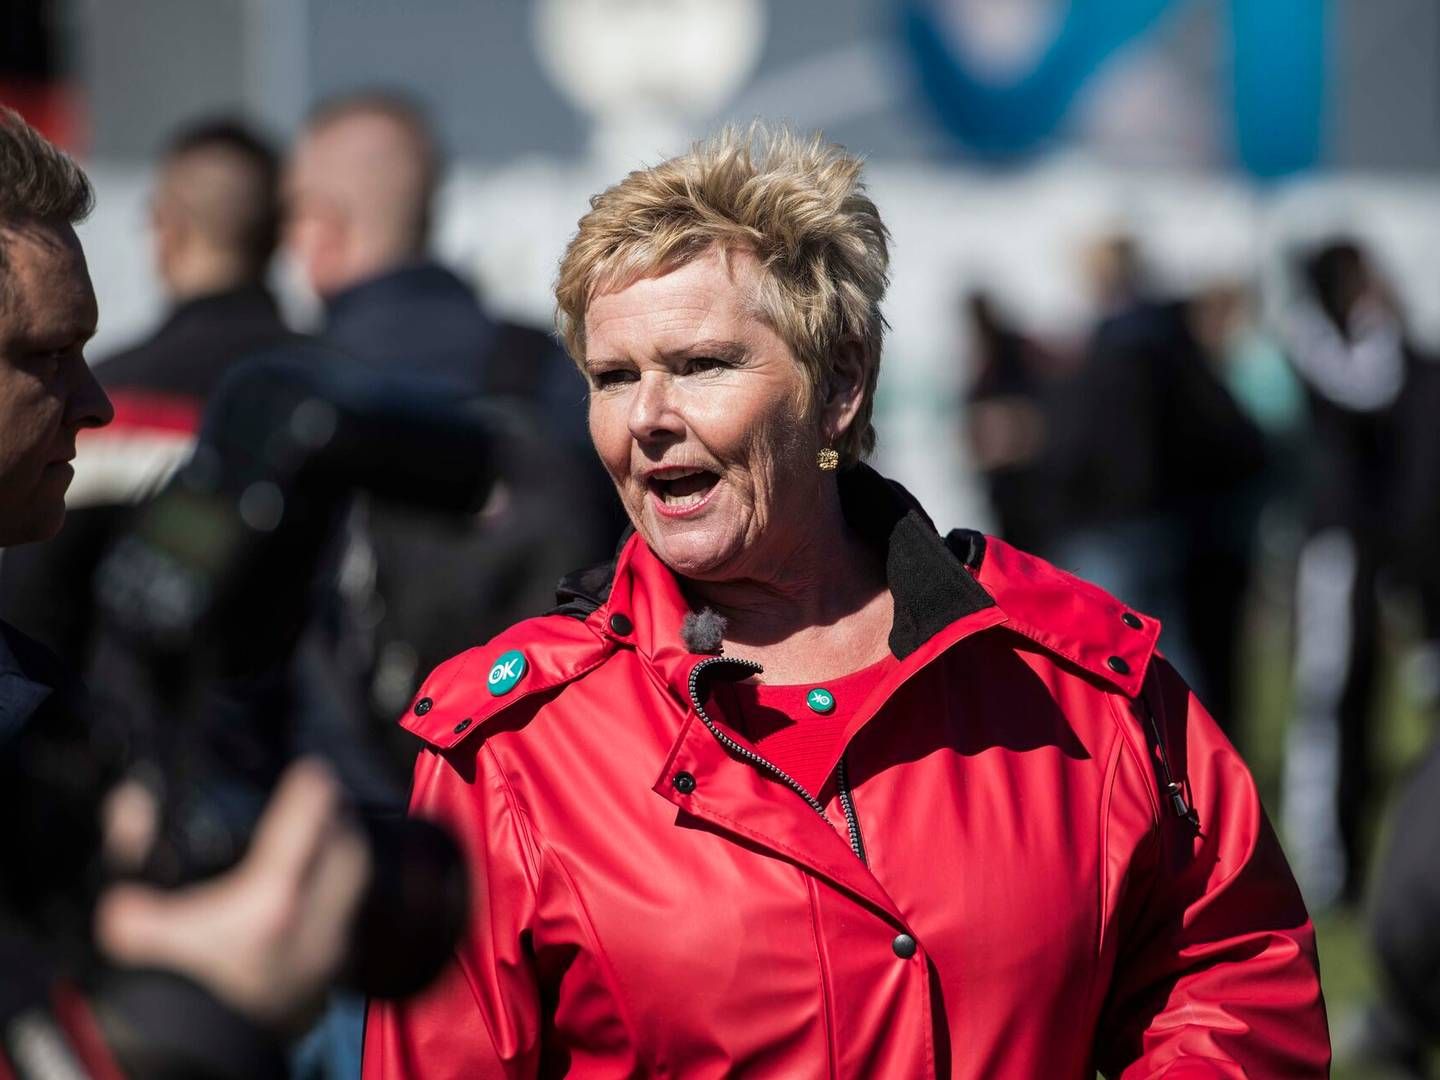 Tdiligere FH-formand Lizette Risgaard afviser nu at have udvist grænseoverskridende adfærd. | Foto: Tidsvilde Stine/Ritzau Scanpix